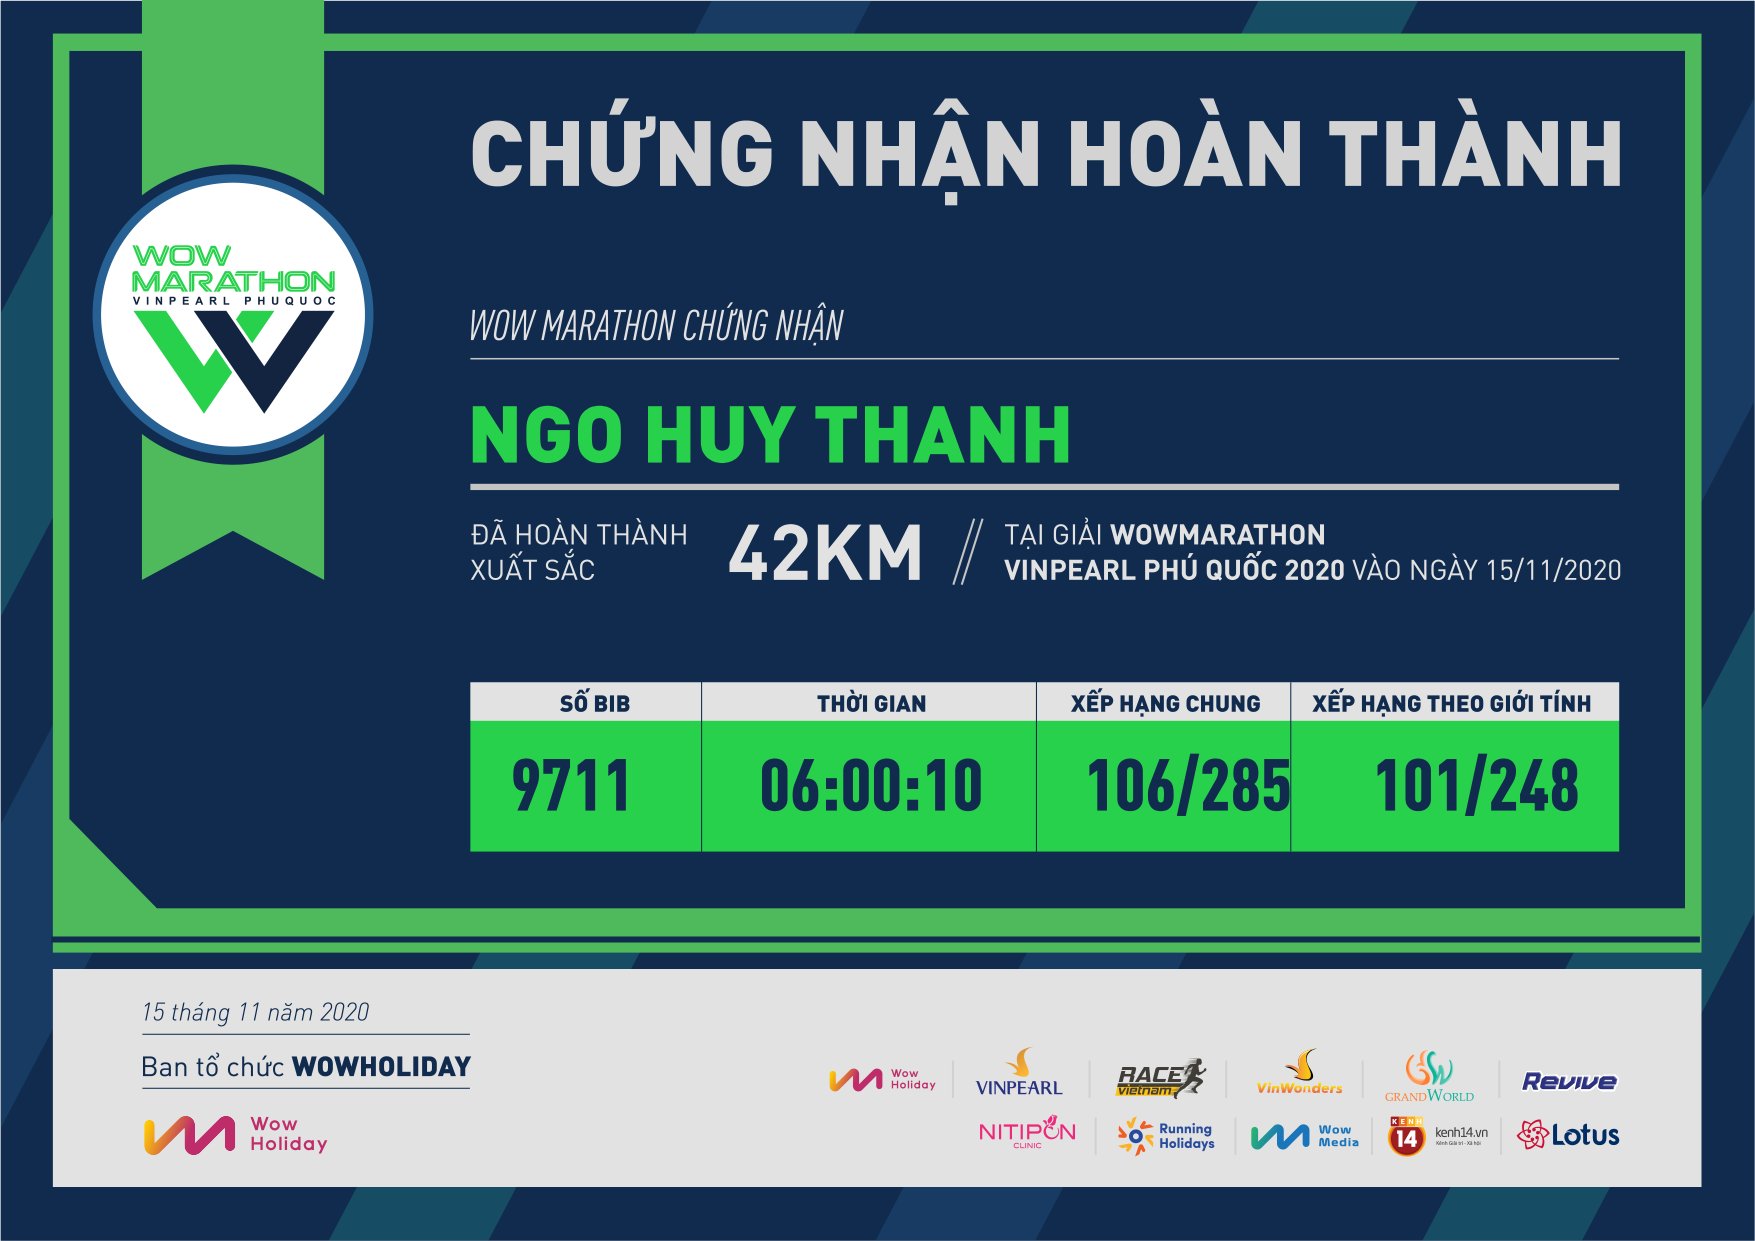 9711 - Ngo Huy Thanh